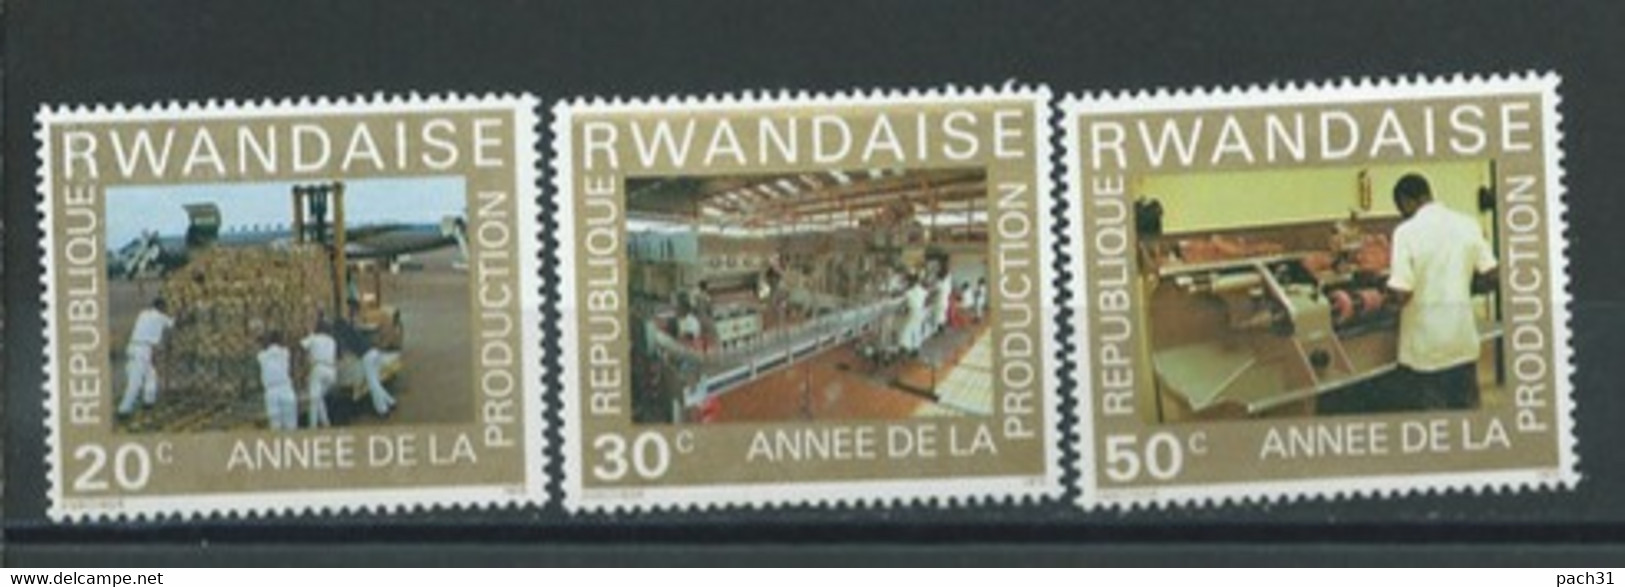 Rwanda  Lot De Timbres   Thème   Année De La Production - Sammlungen